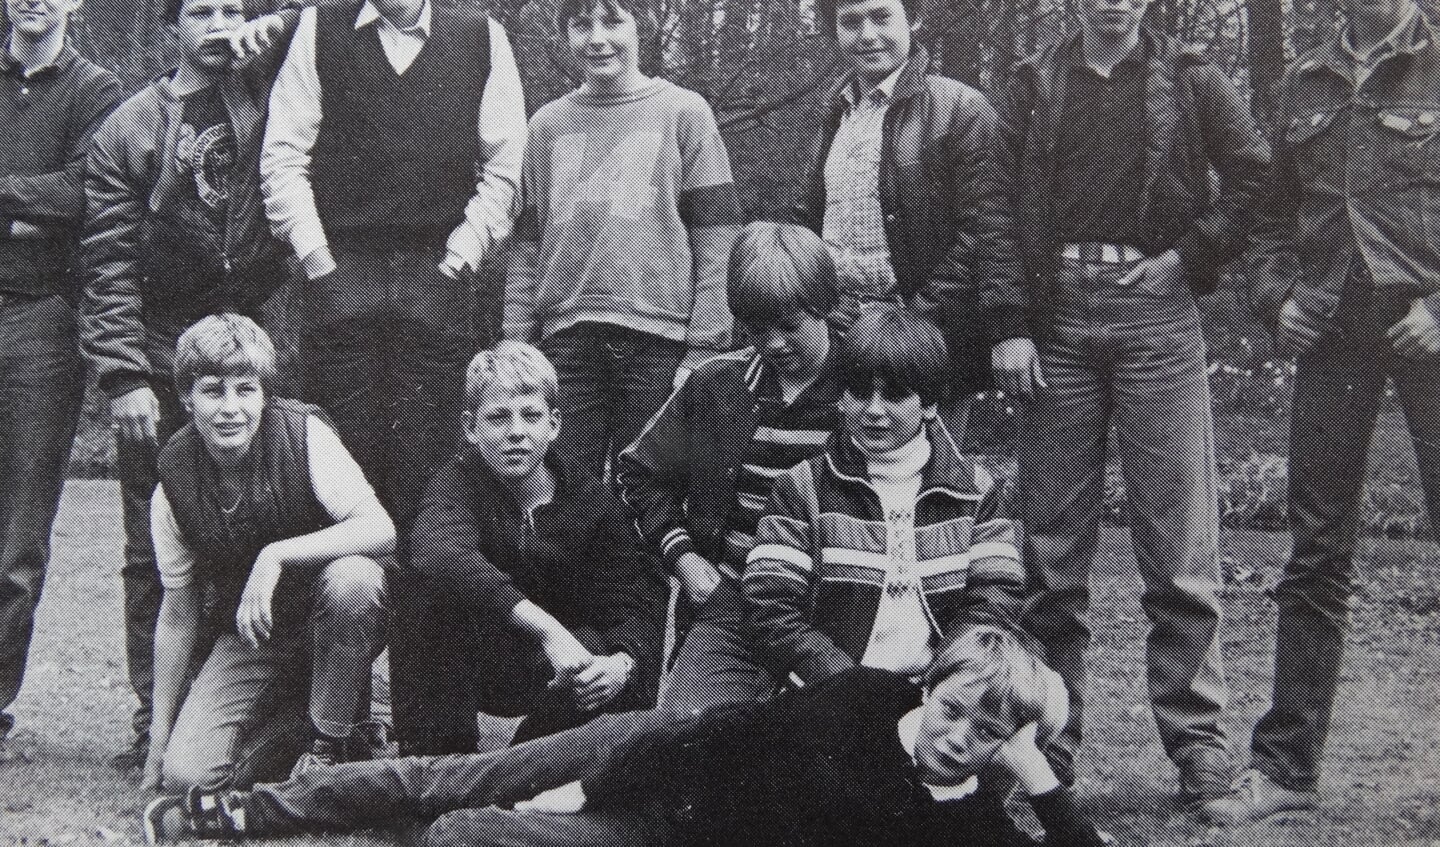 Klassenfoto: Arno staat in het midden met nummer 14 op zijn trui